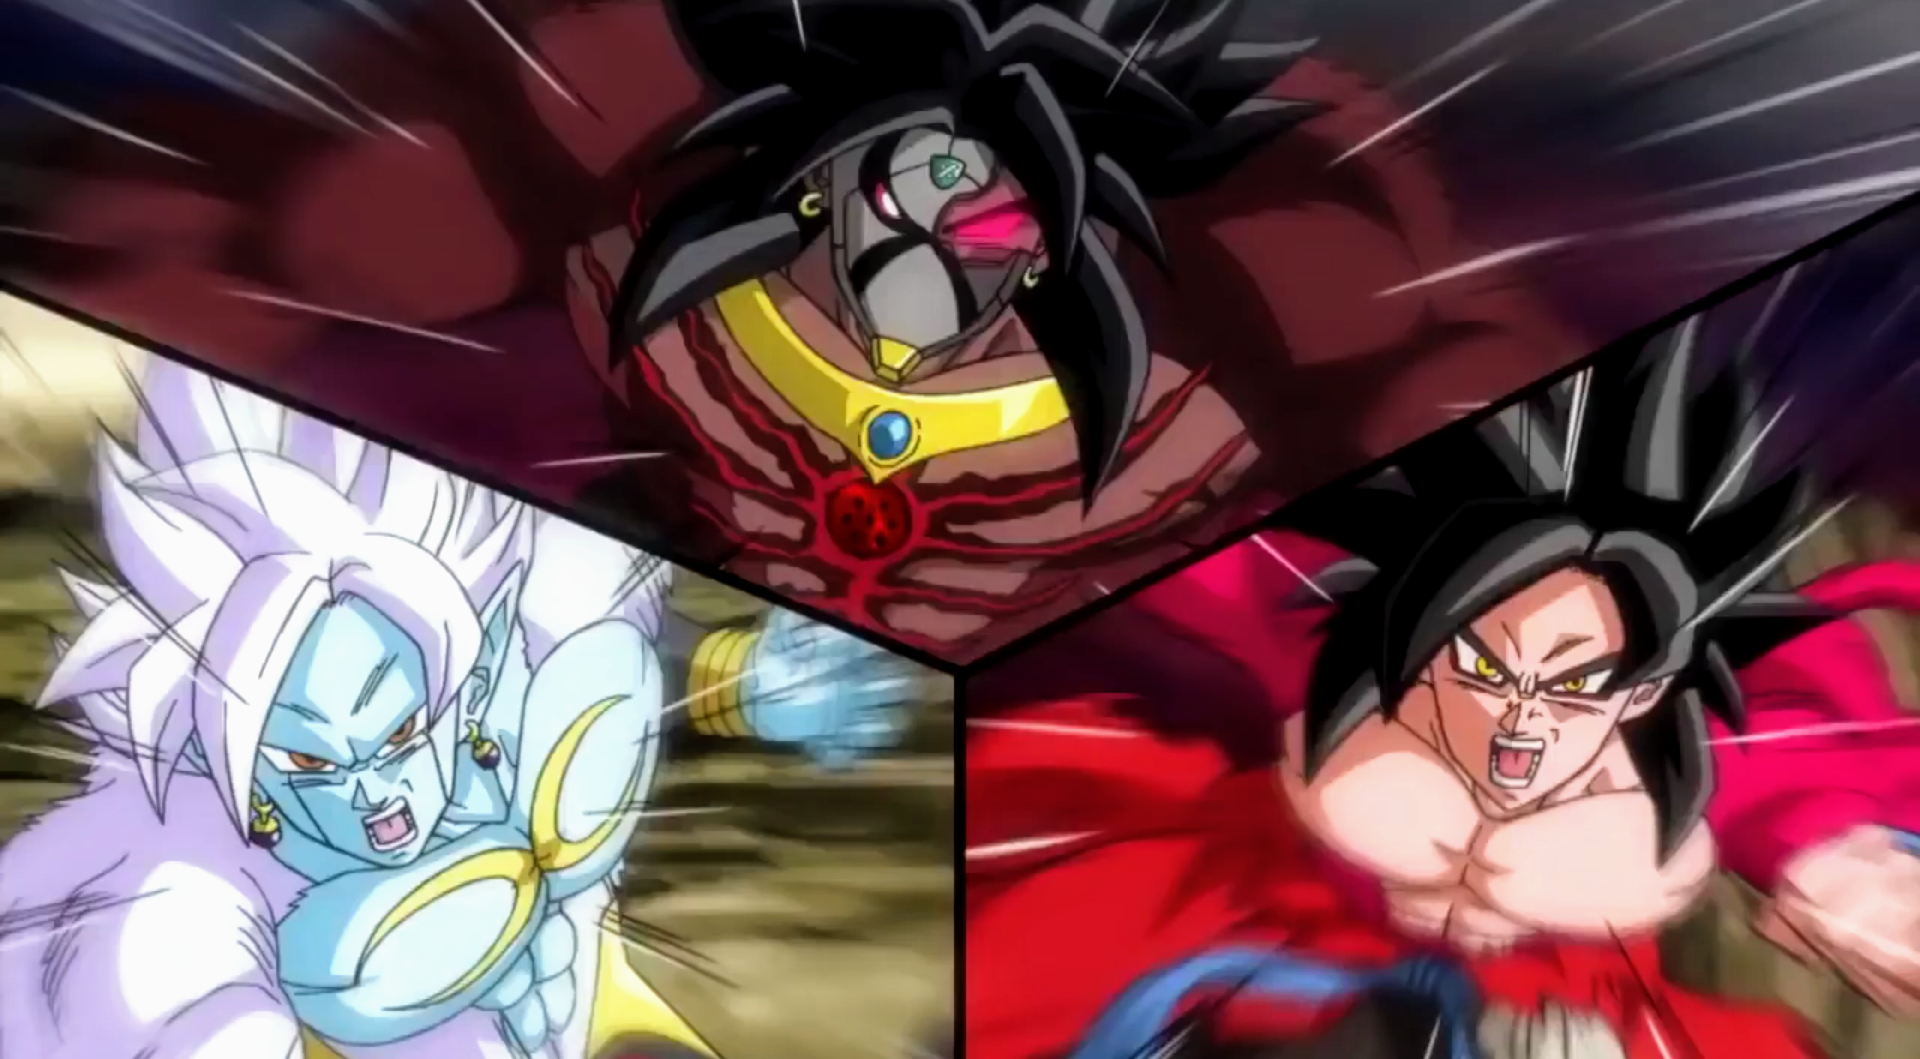 Stream Xeno Goku SSJ5 Vs Super Omega Shenron by Xeno Gogeta (Super Saiyan 4  Full Power)